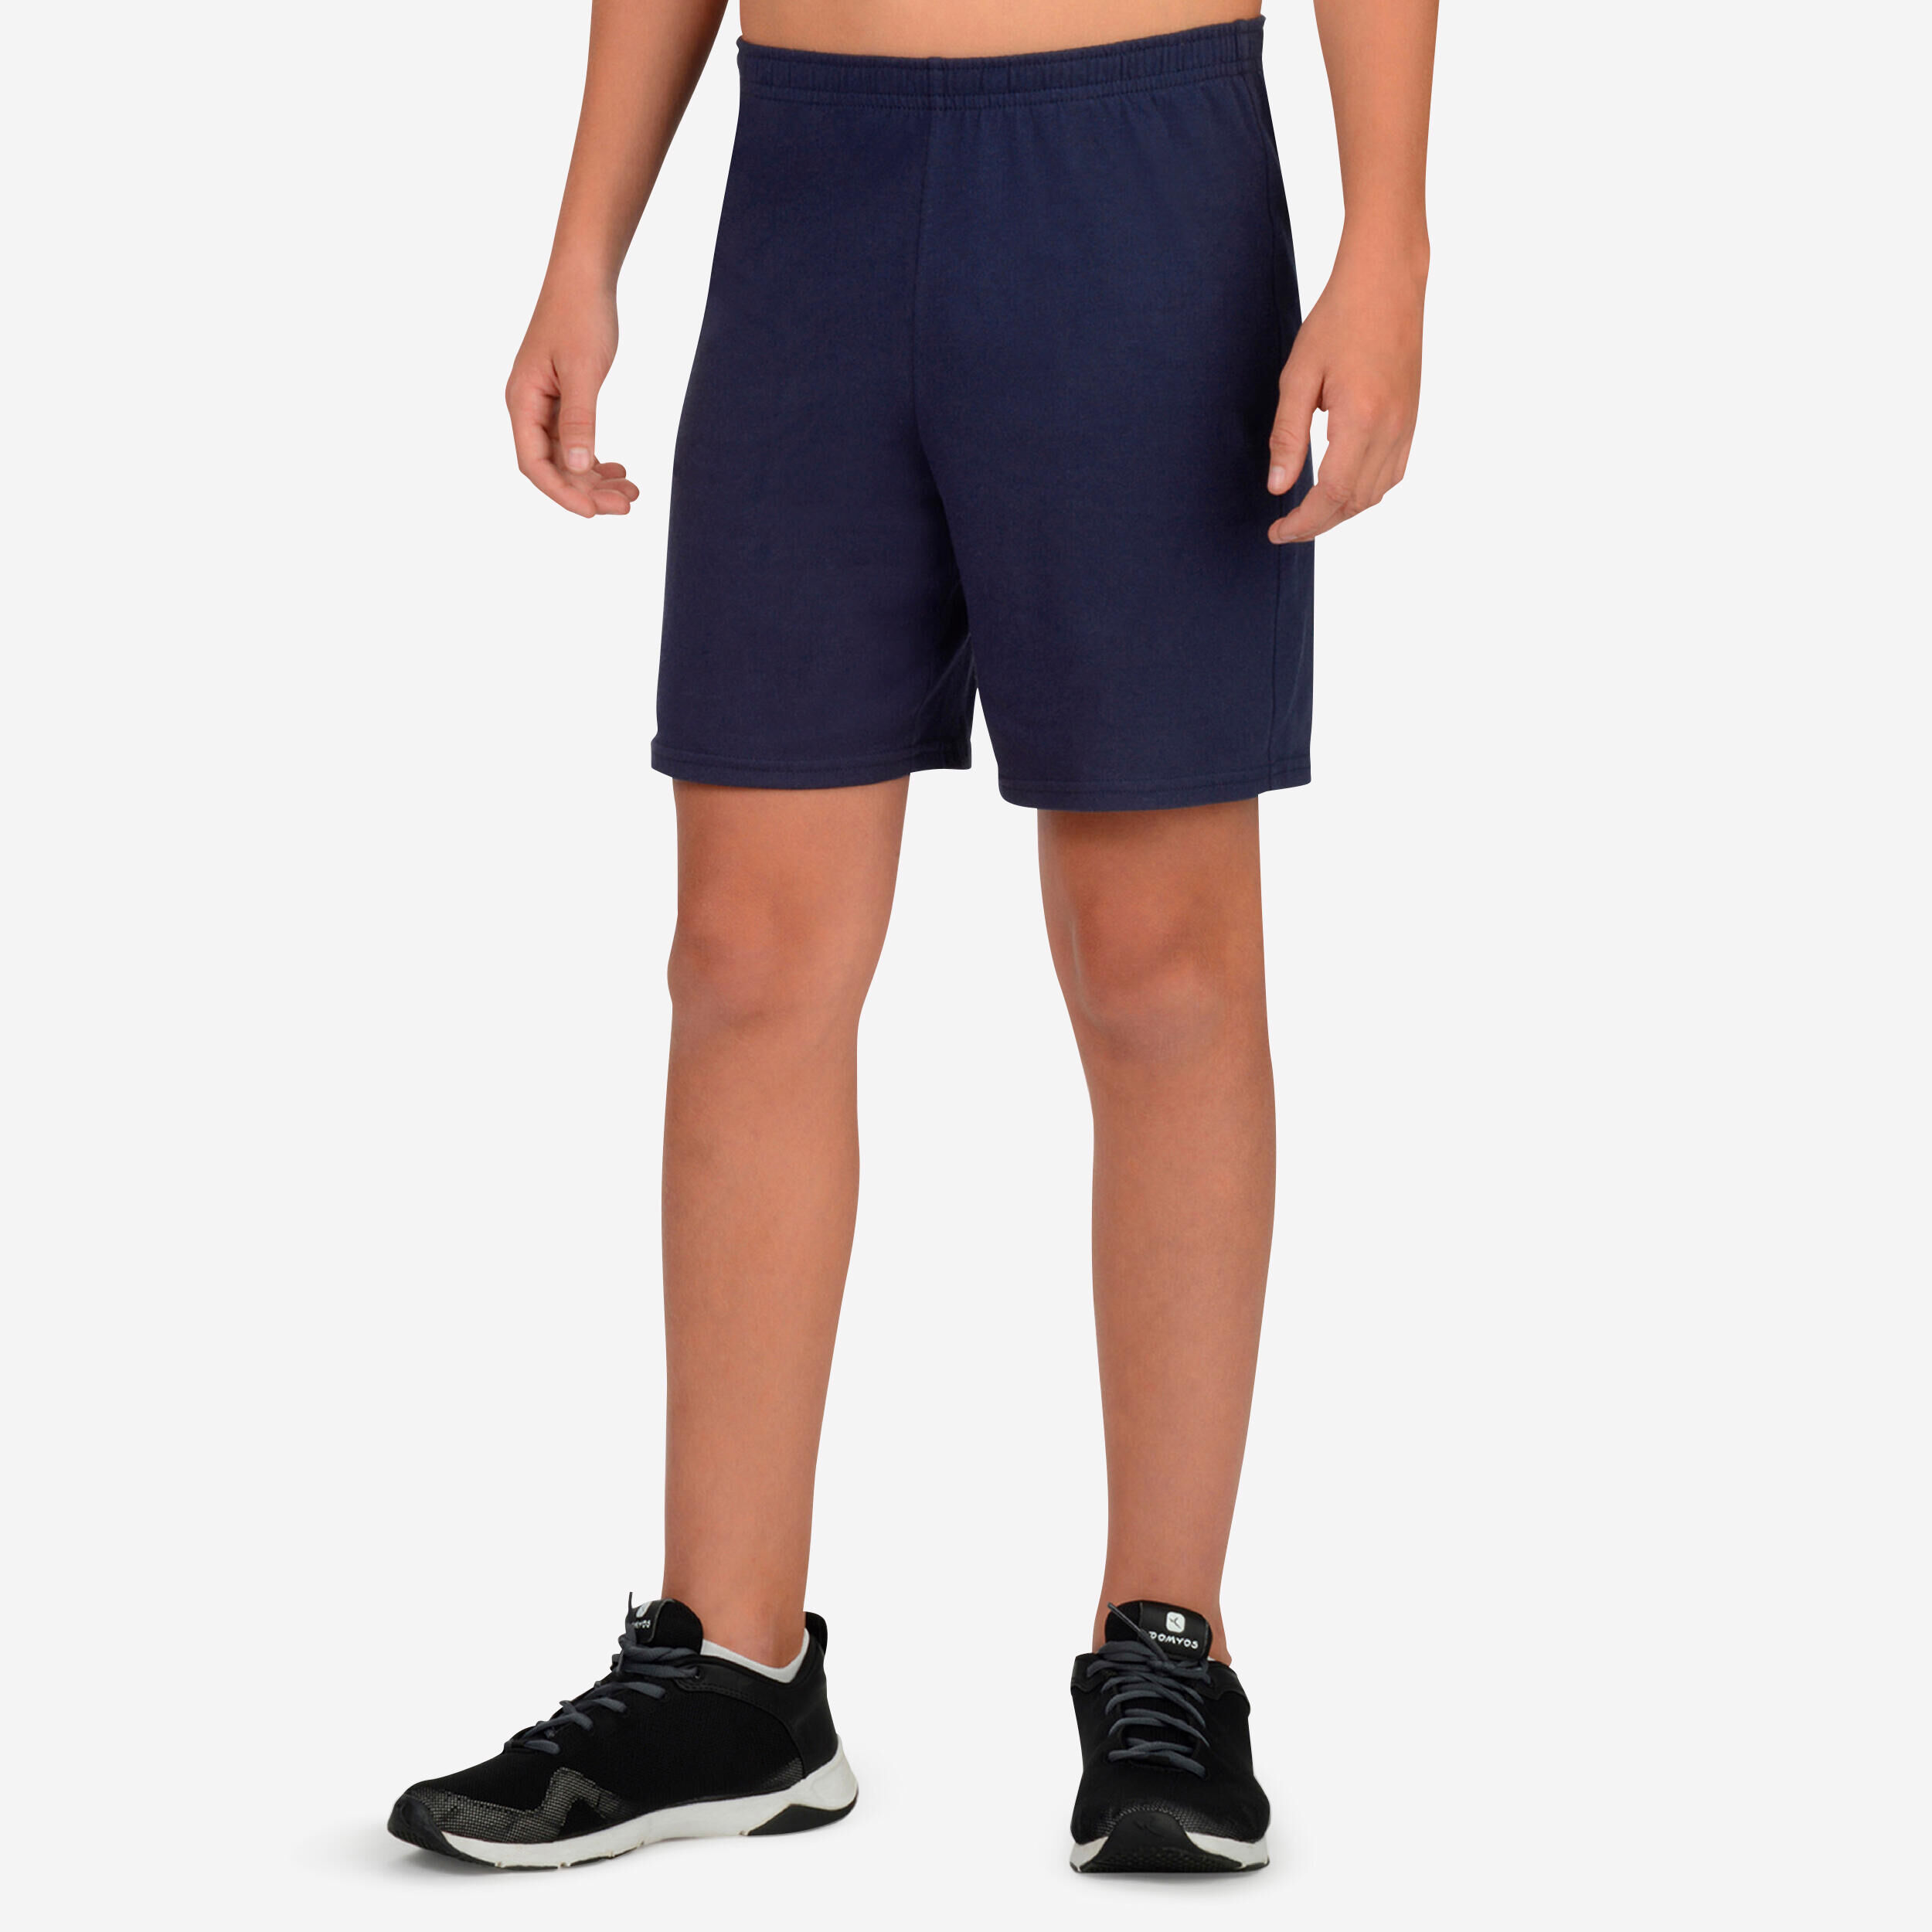 DOMYOS Kids' Basic Cotton Shorts - Navy